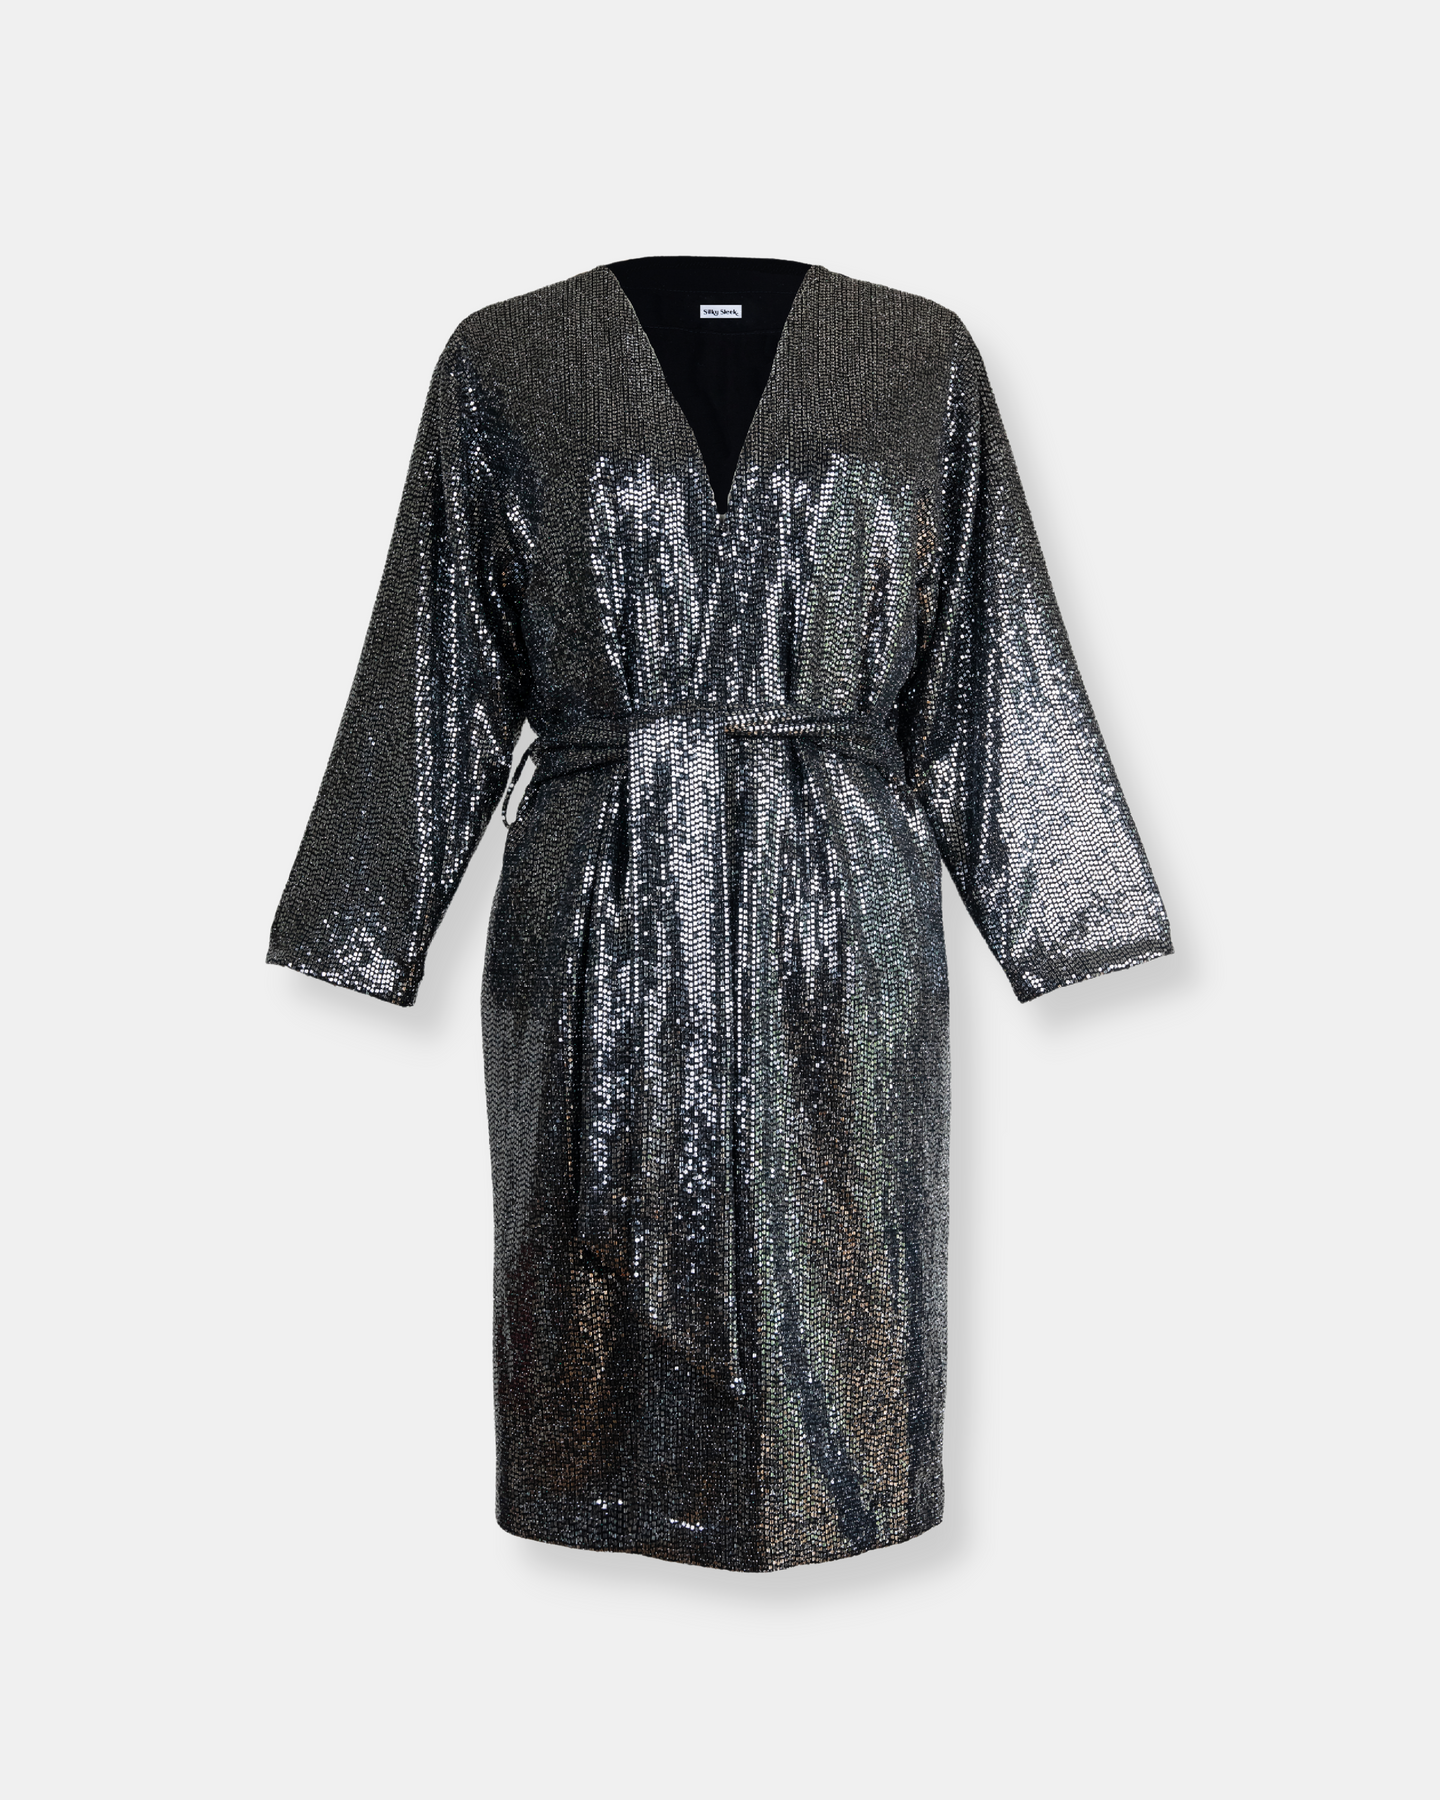 Kimono Ibiza – Silky Sleek